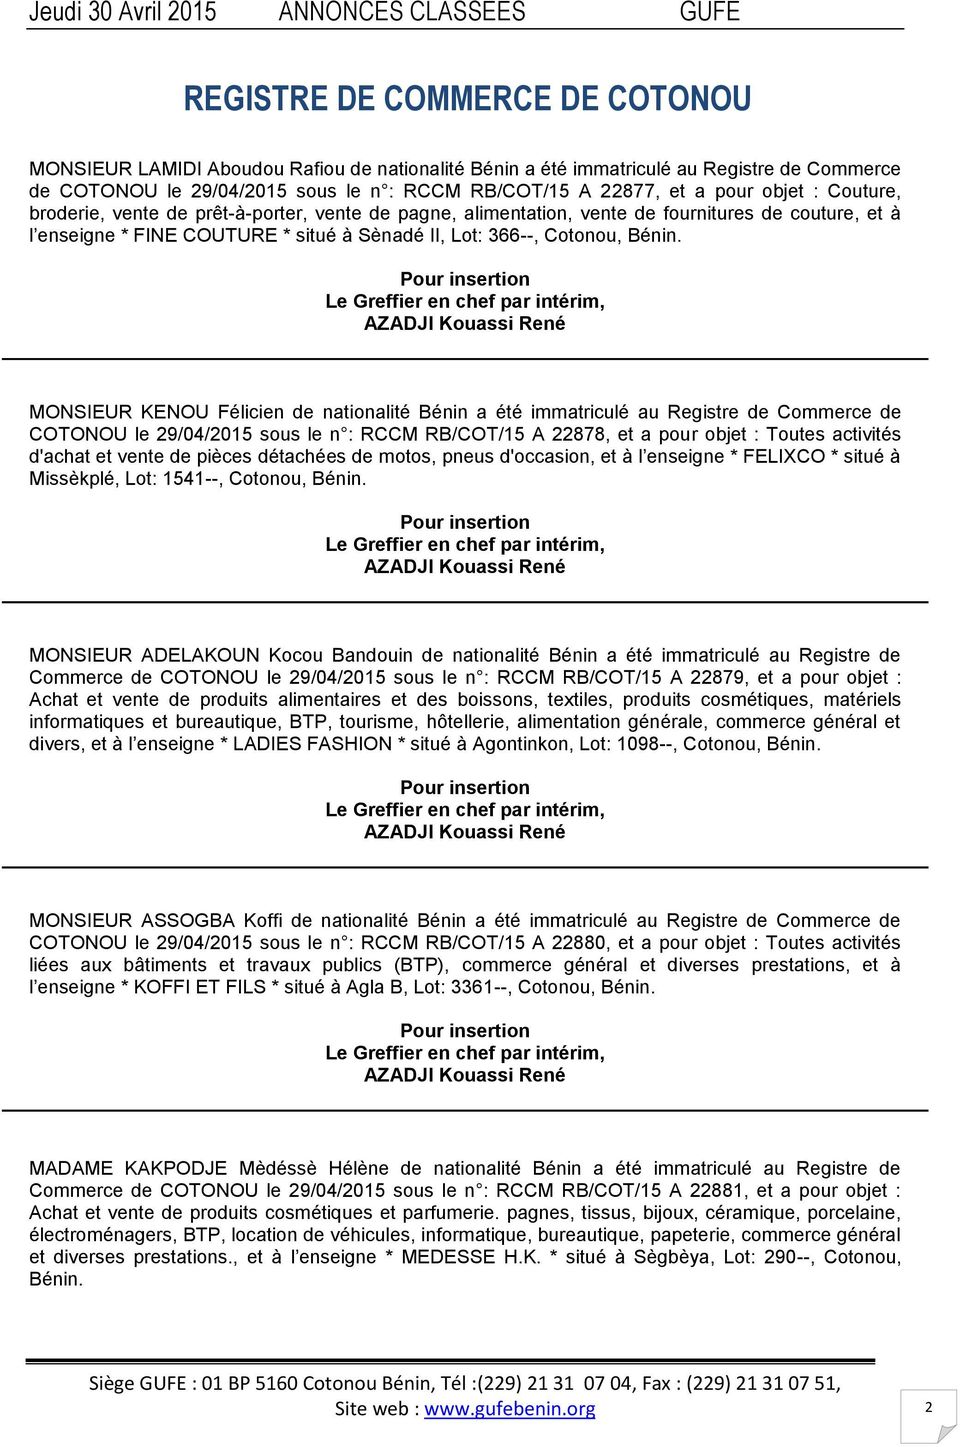 MONSIEUR KENOU Félicien de nationalité Bénin a été immatriculé au Registre de Commerce de COTONOU le 29/04/2015 sous le n : RCCM RB/COT/15 A 22878, et a pour objet : Toutes activités d'achat et vente